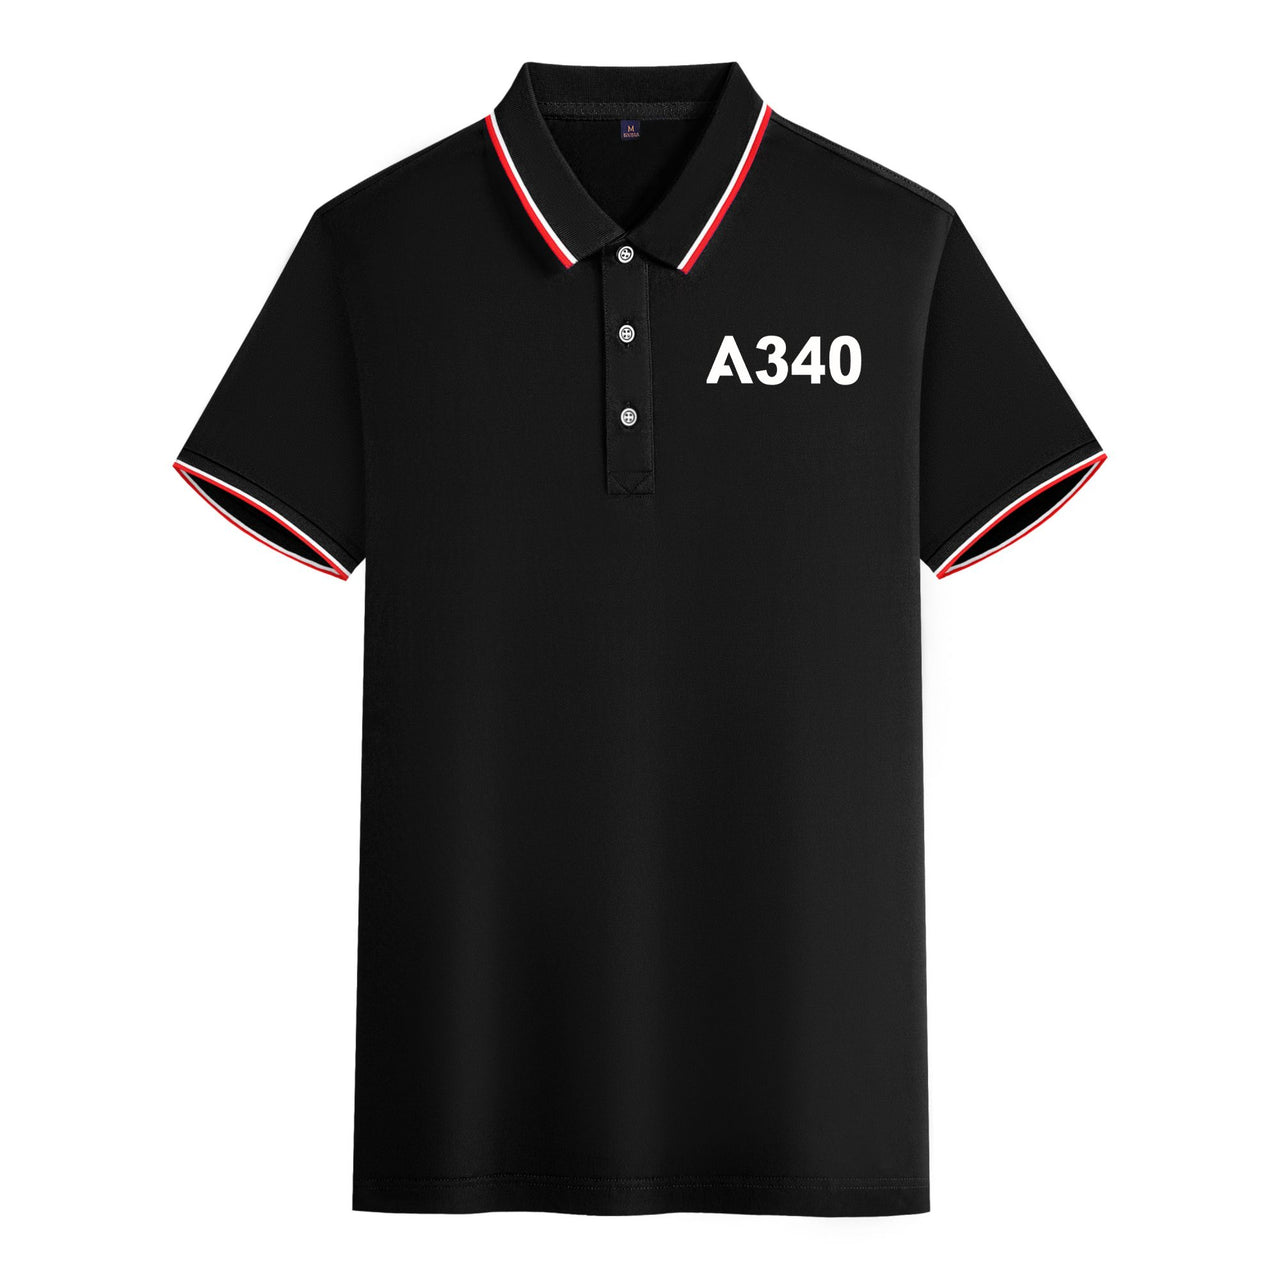 A340 Flat Text Designed Stylish Polo T-Shirts